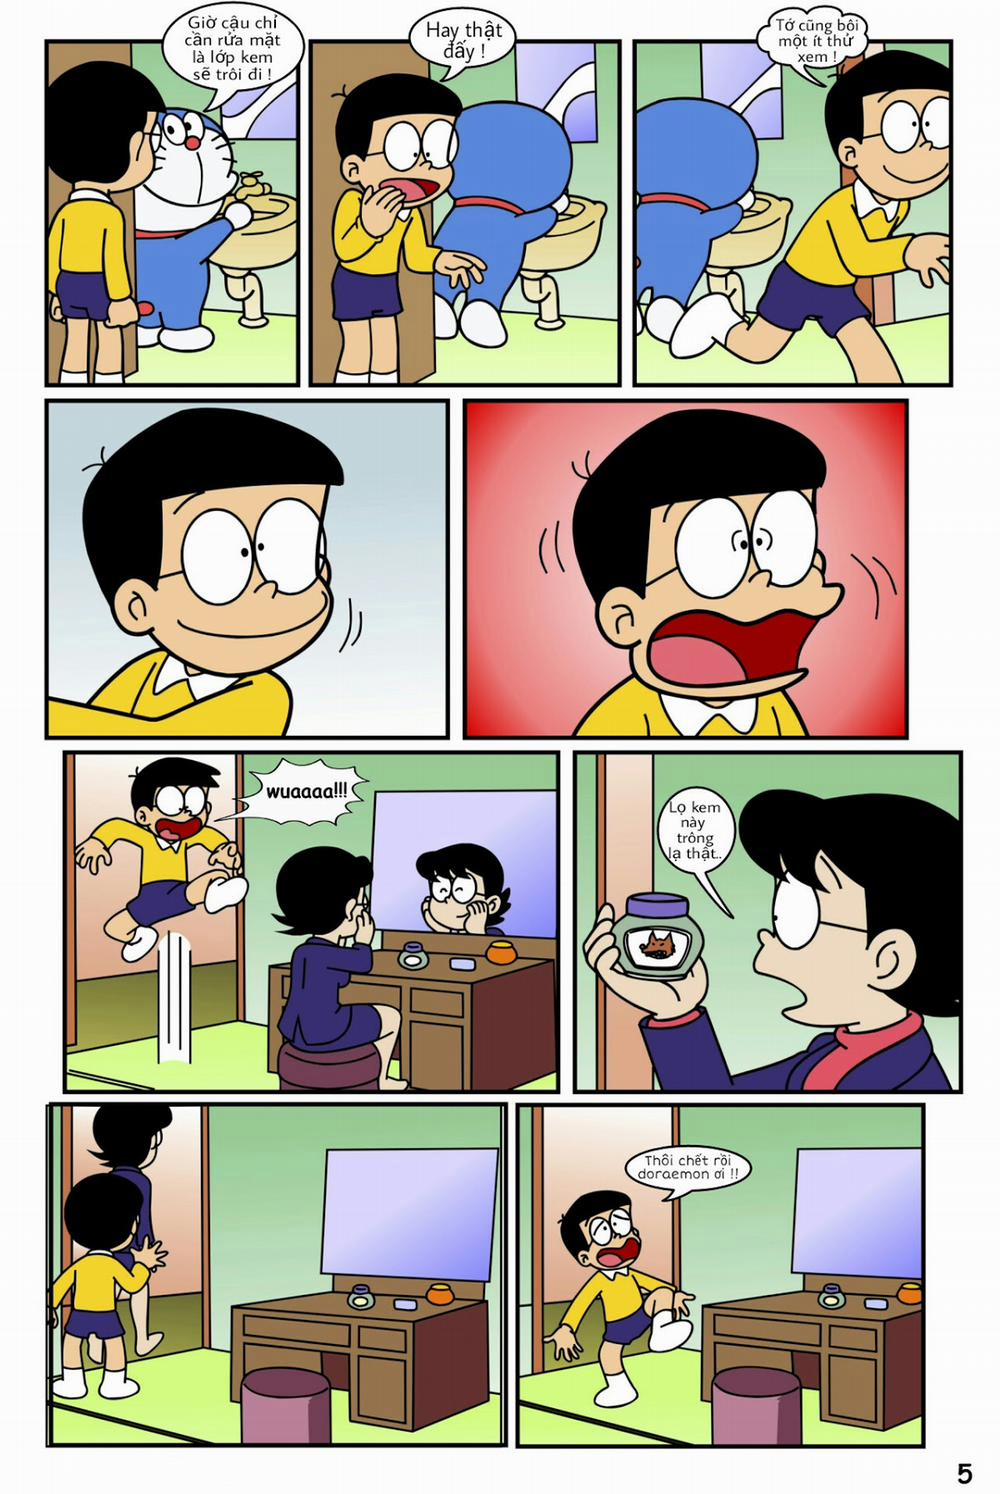 Tuyển Tập Doraemon Doujinshi 18+ Chương 19 Kem ch s i 1 Trang 7